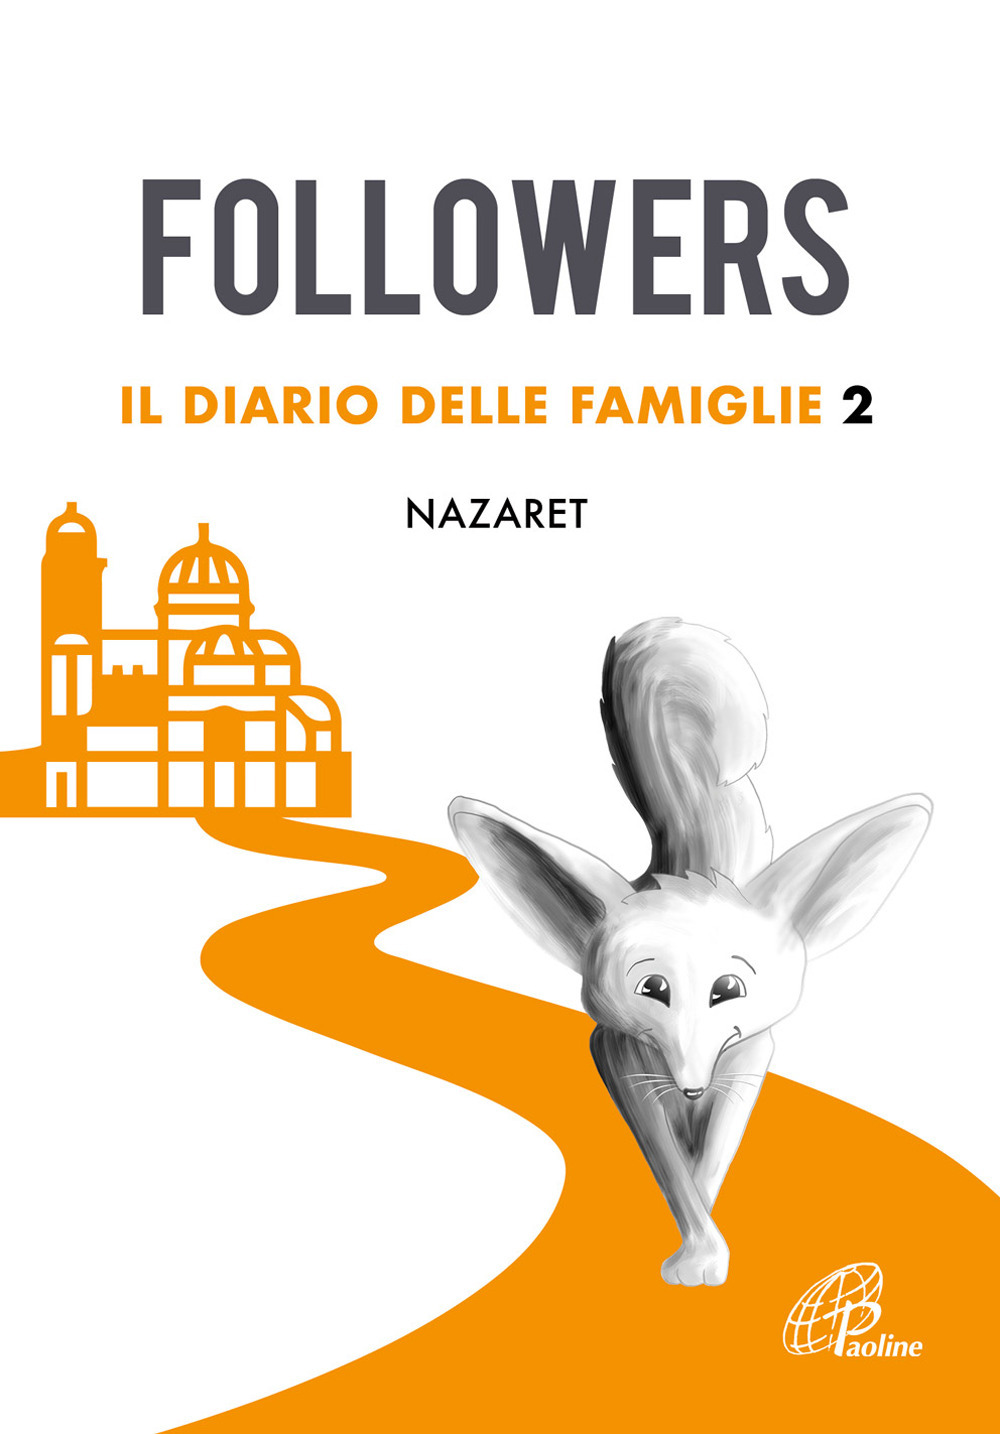 Followers. Il diario delle famiglie. Ediz. illustrata. Vol. 2: Nazaret